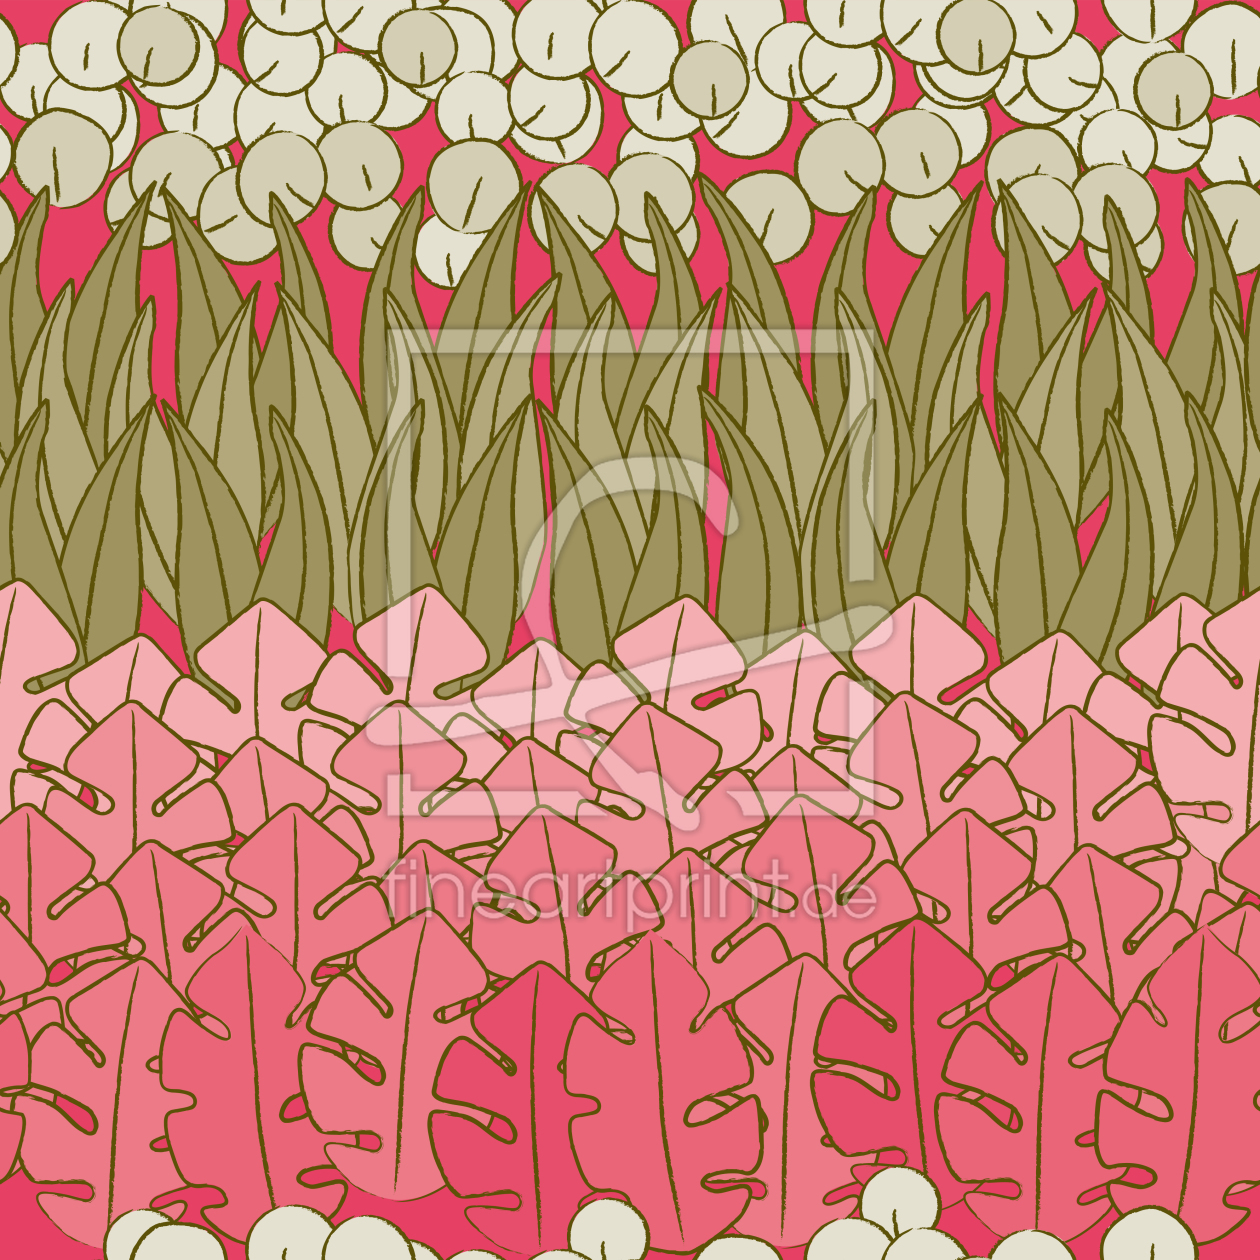 Bild-Nr.: 9024900 Muttis Blumenbeet erstellt von patterndesigns-com